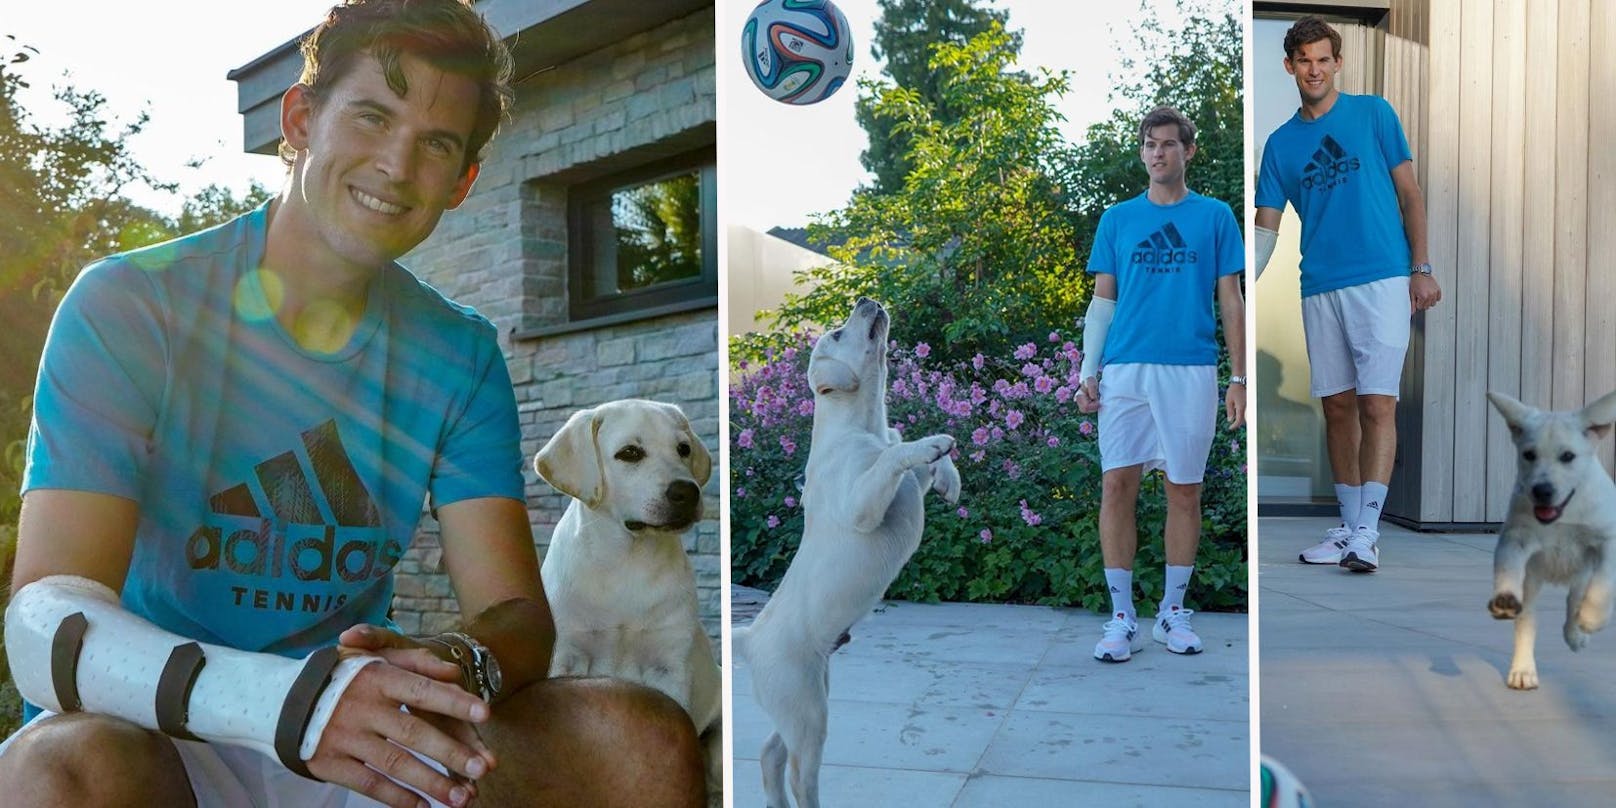 Tennis-Star Dominic Thiem hat einen neuen Hund. Der neue Gefährte teilt seine Leidenschaft für den Ball.